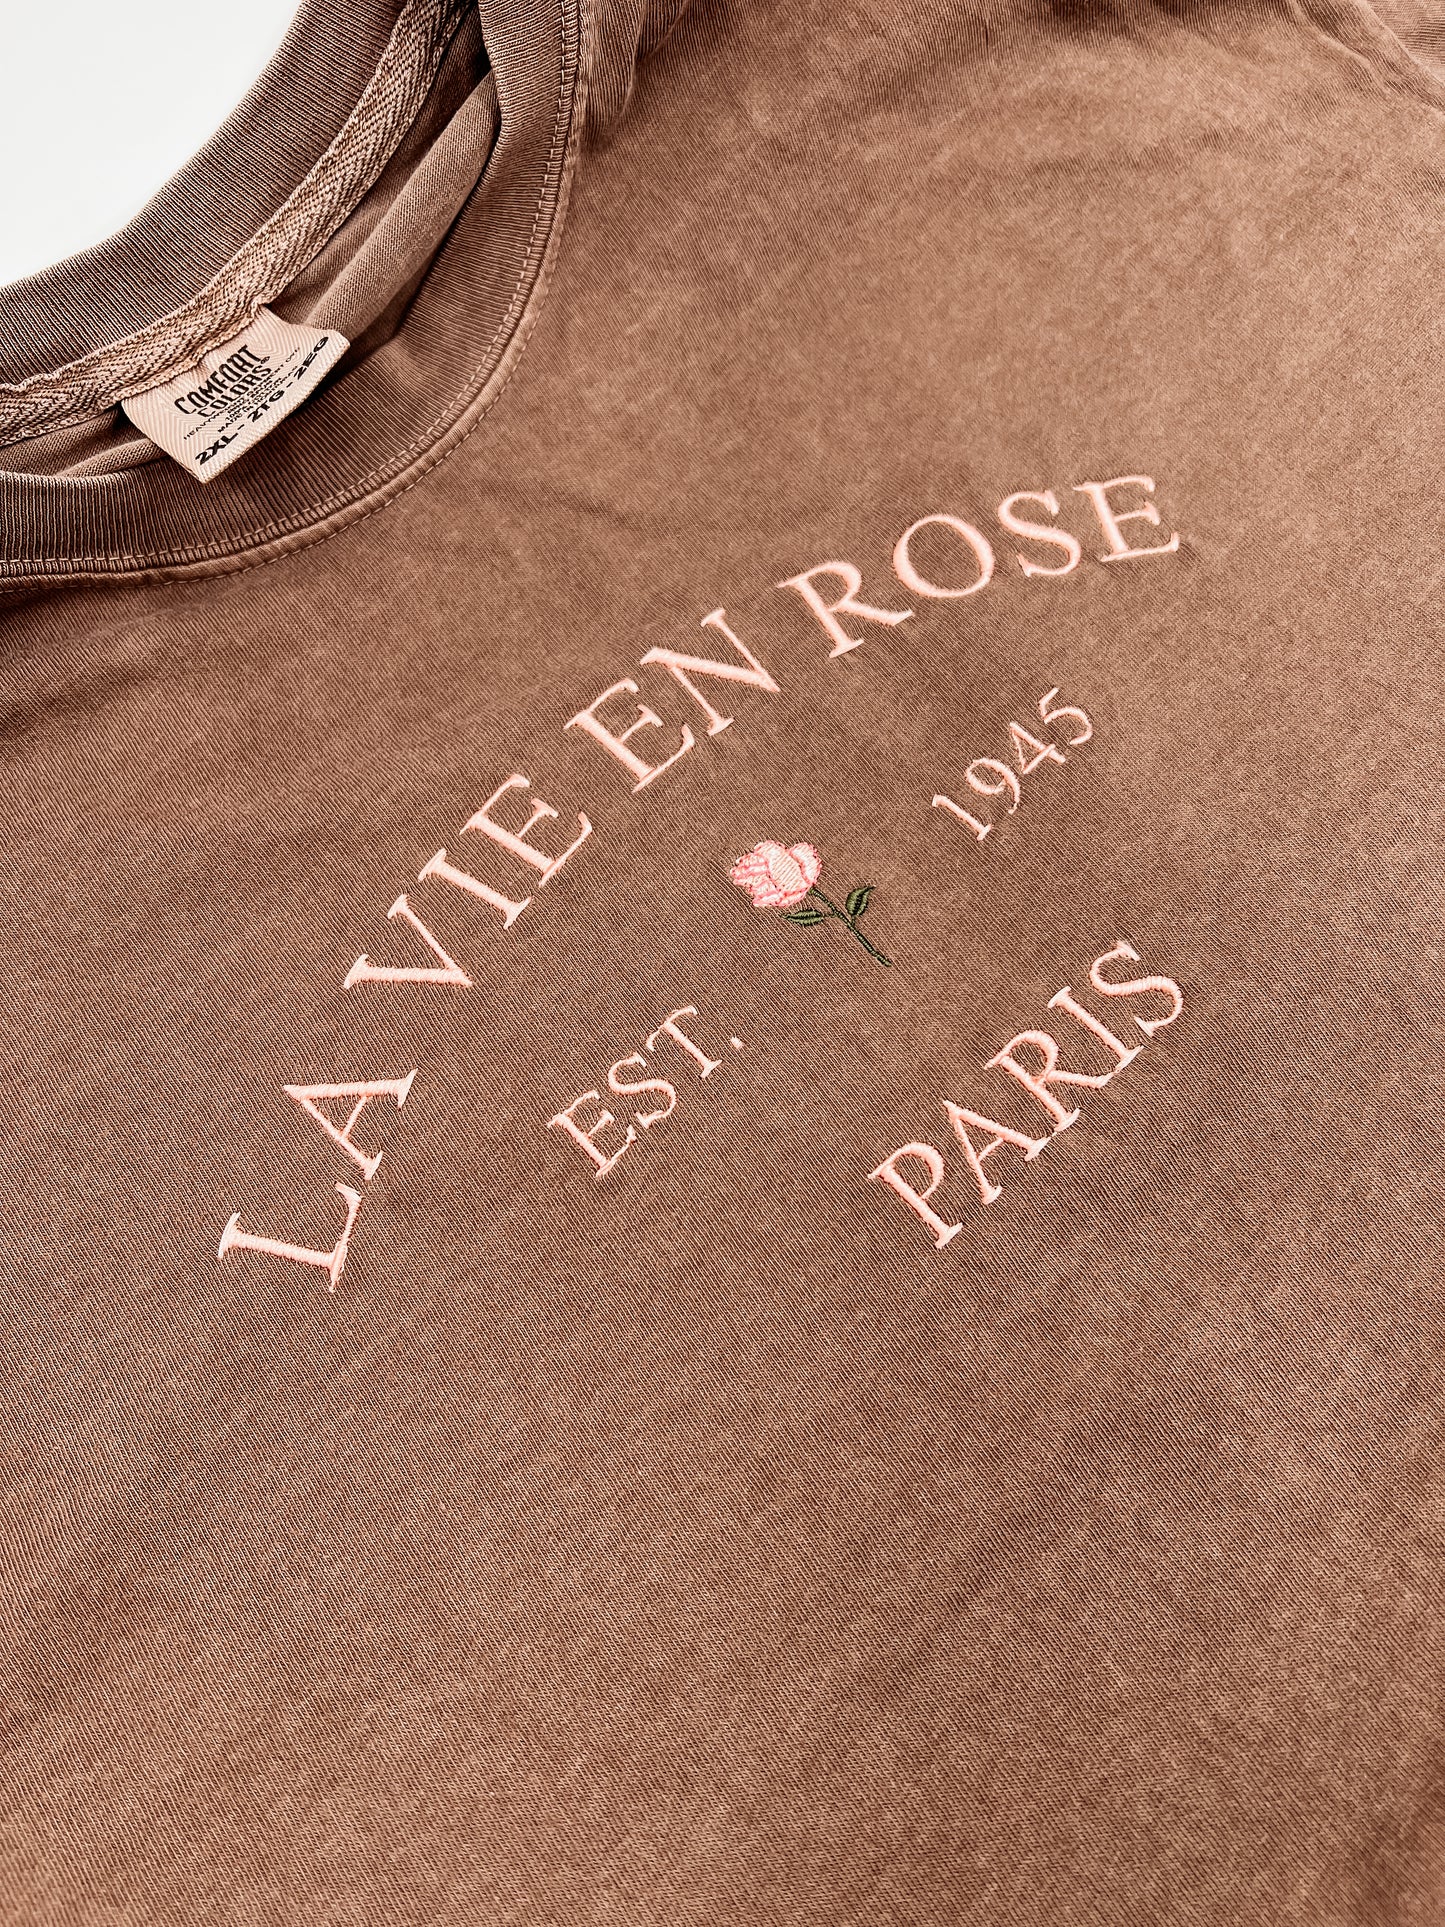 La Vie En Rose Embroidered Shirt